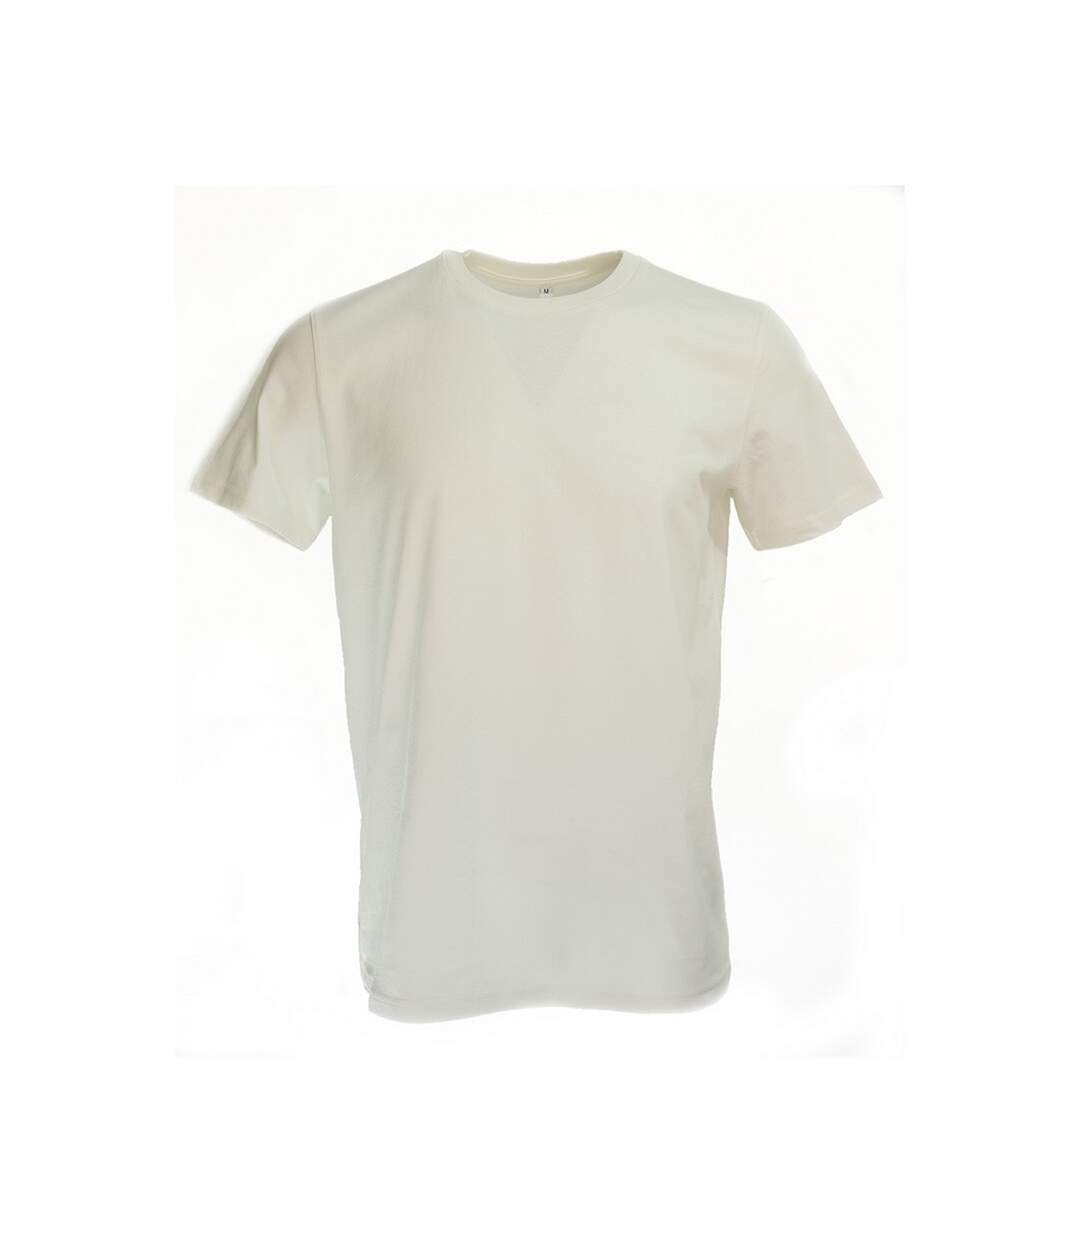 Original FNB - T-Shirt Adulte - Unisexe (Beige claire) - UTPC4010